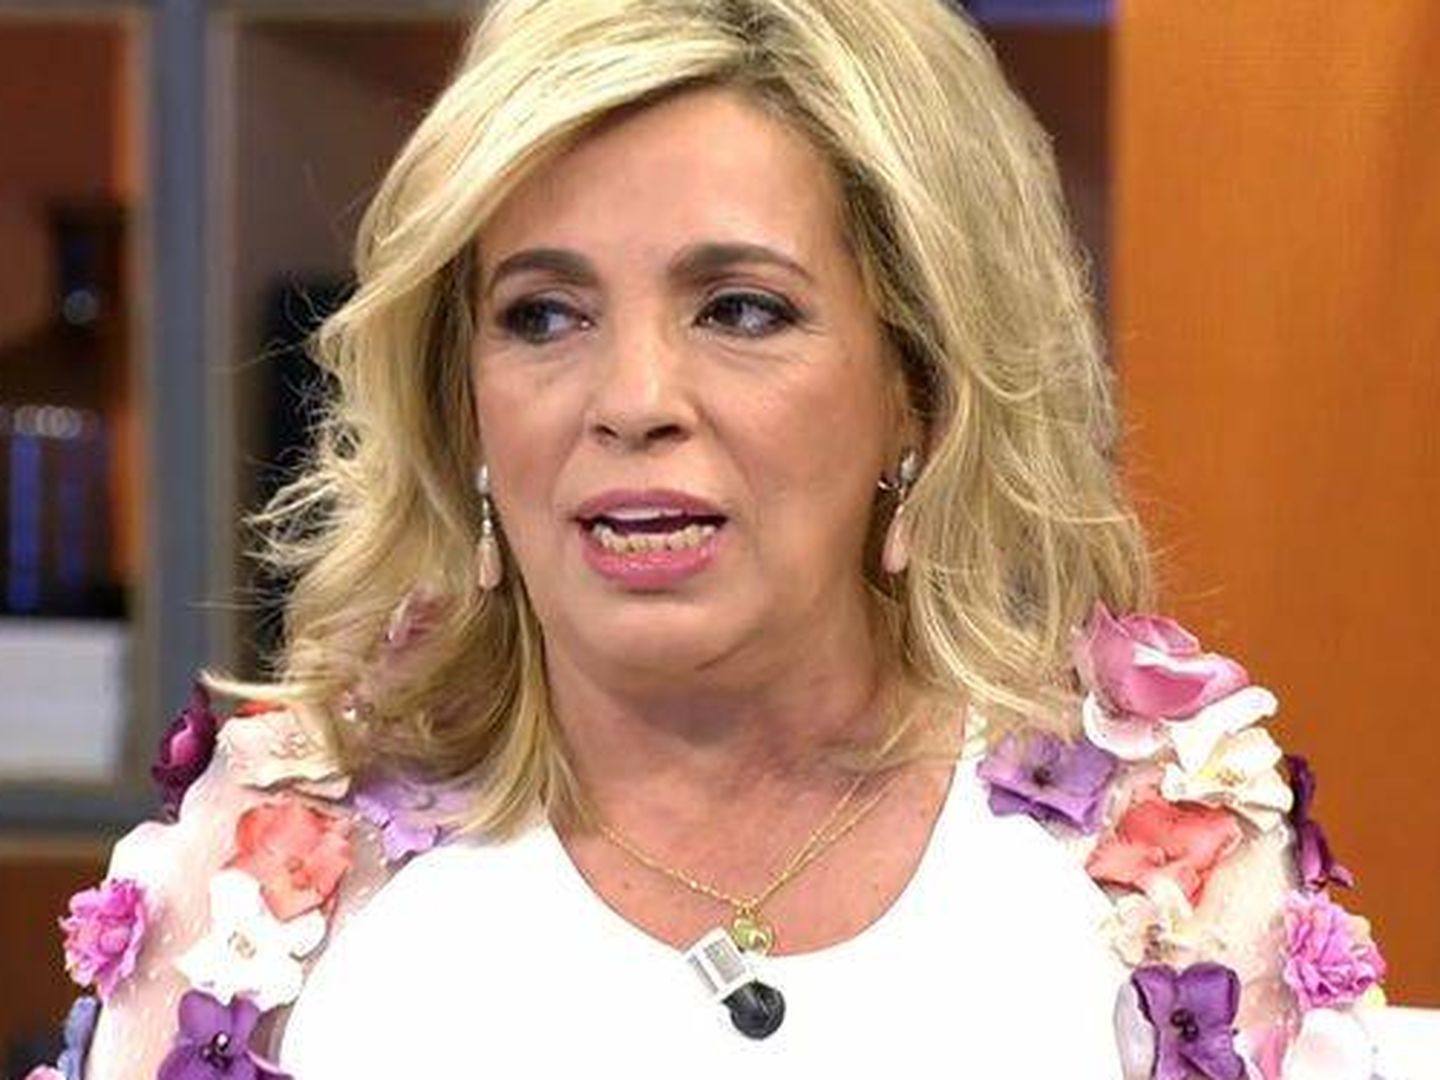 Carmen Borrego, en 'Viva la vida'. (Telecinco)